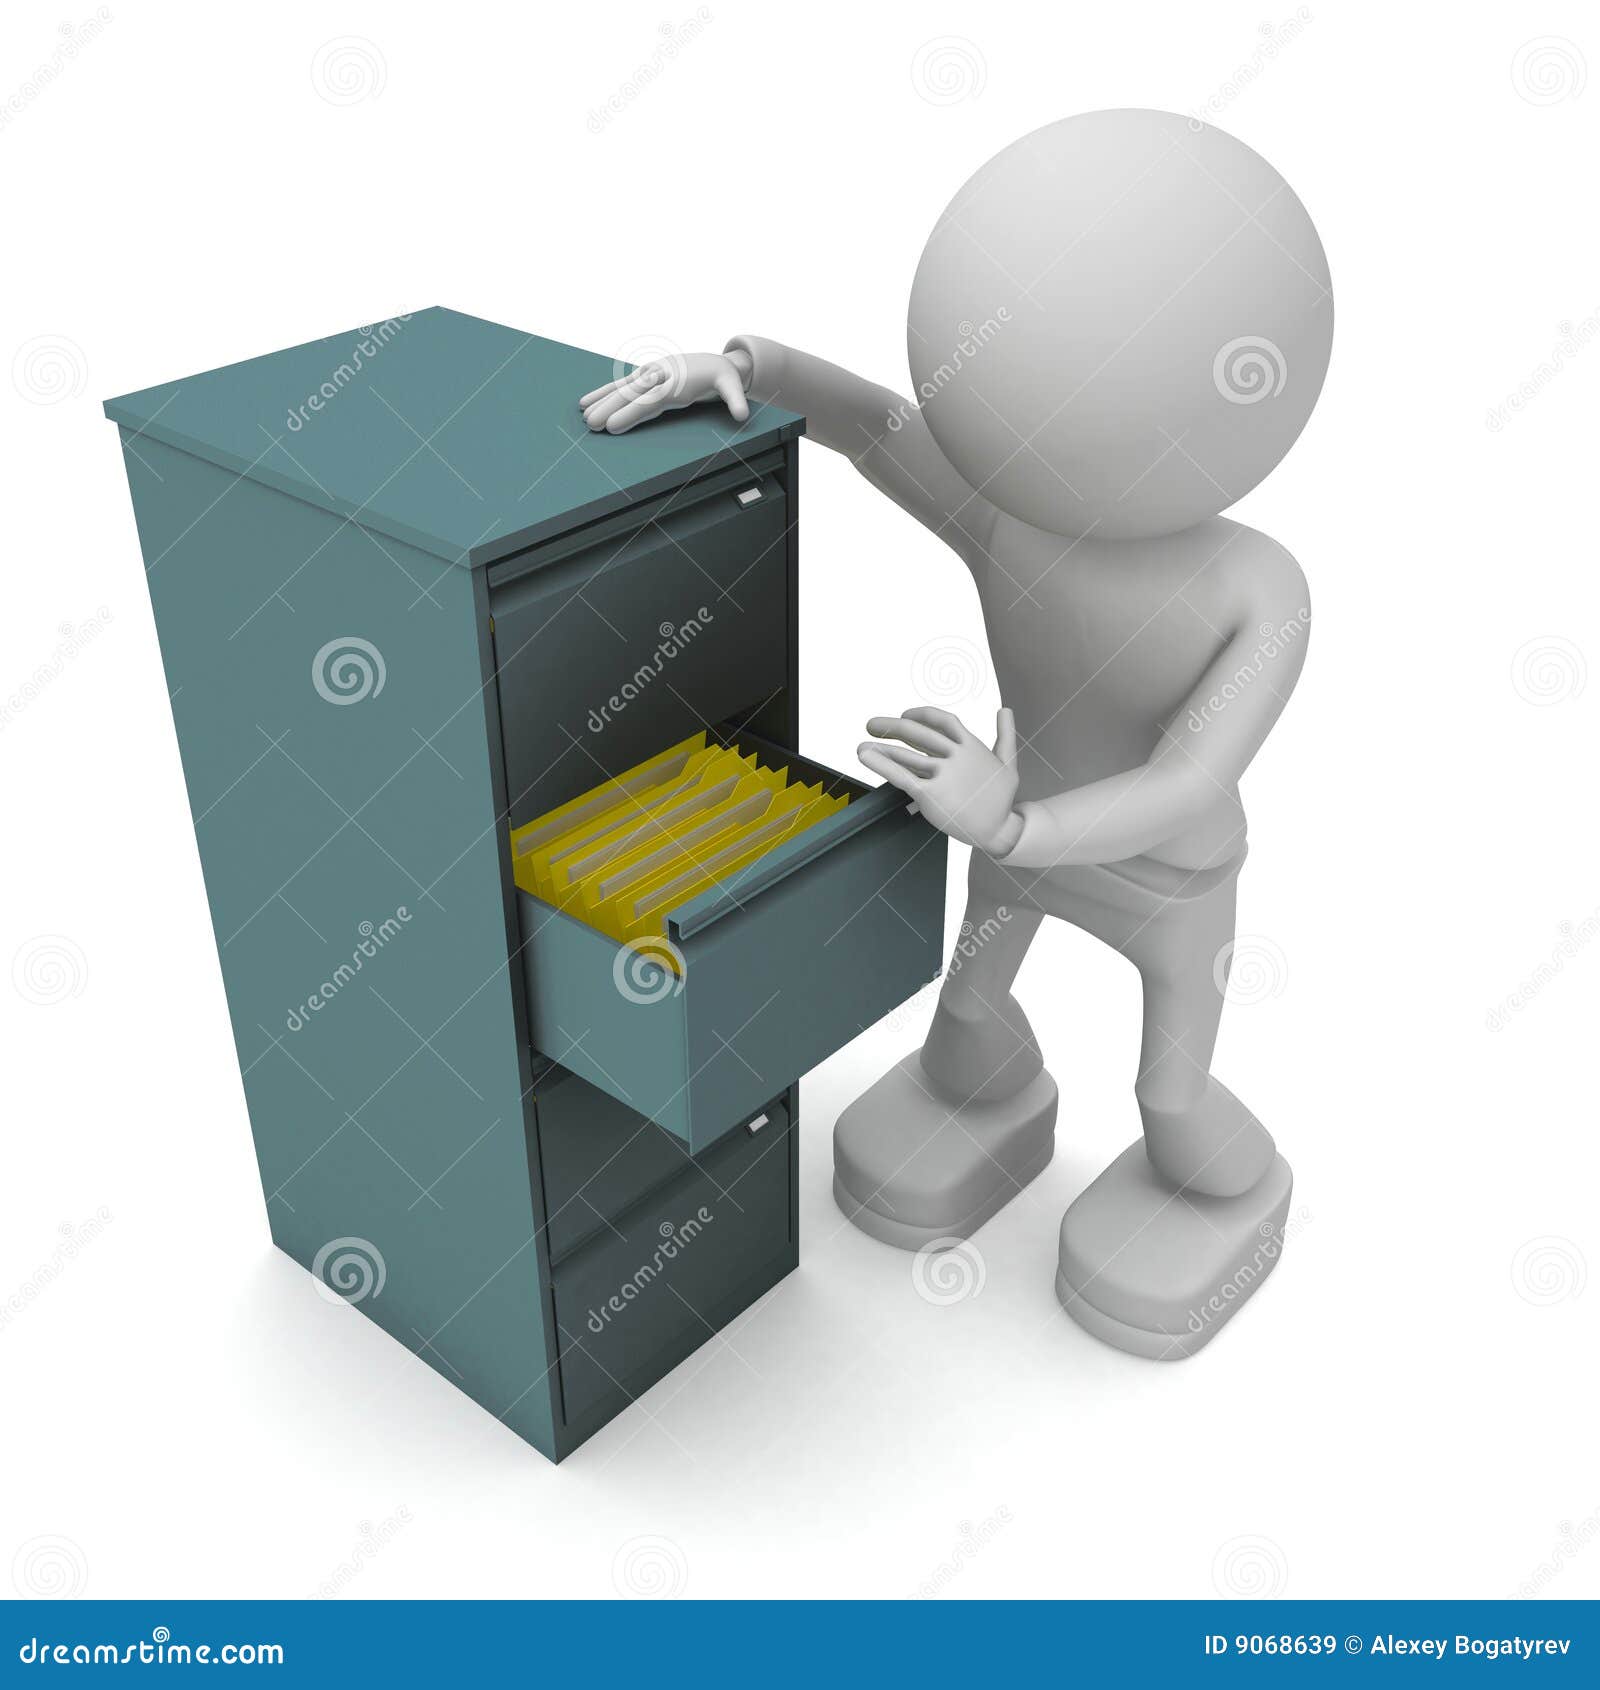 clipart file cabinet icon - photo #17